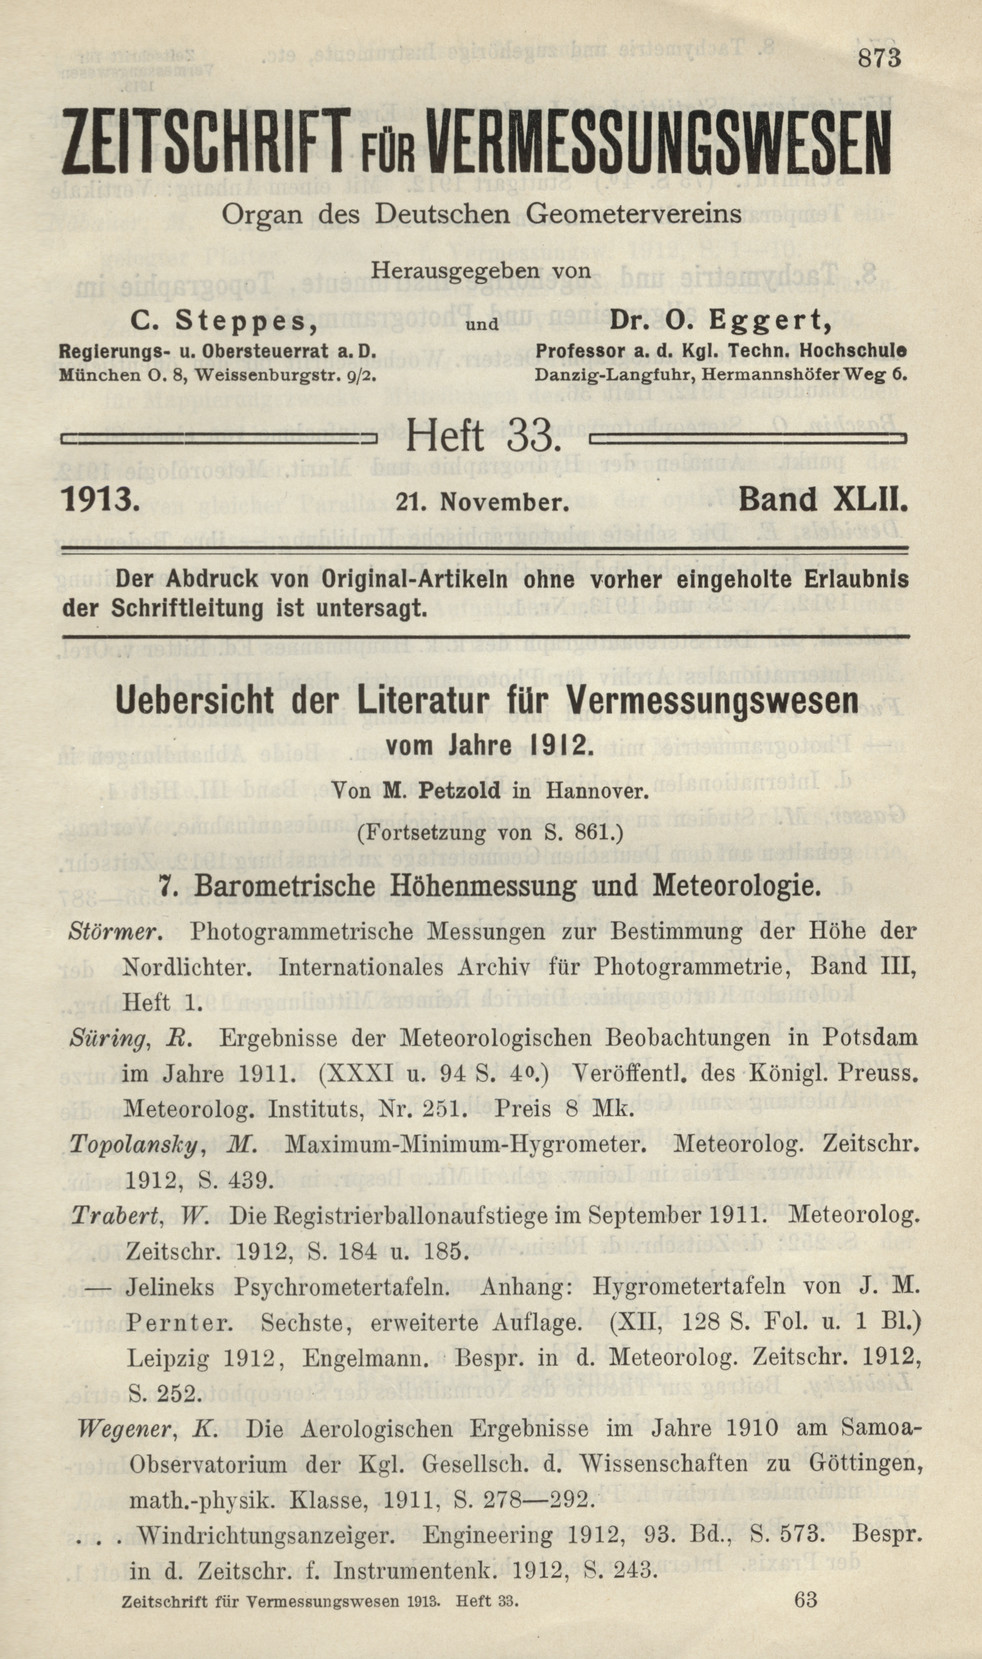 Zeitschrift für Vermessungswesen, Heft 33, Band XLII